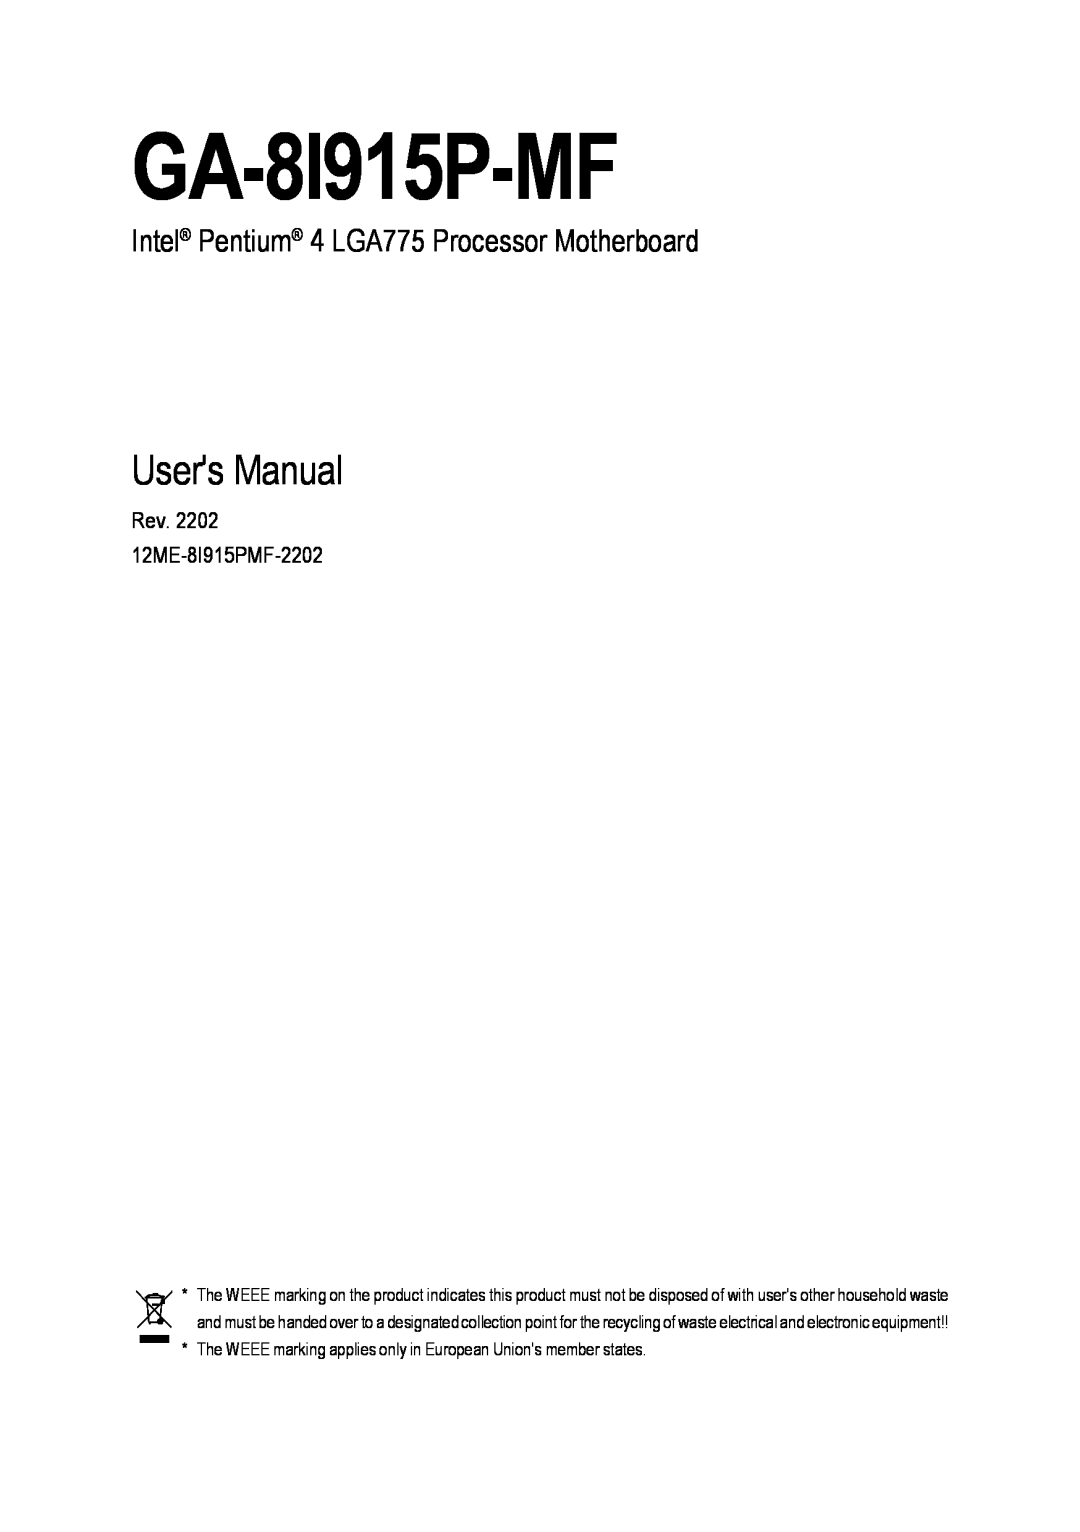 Gigabyte GA-8I915P-MF user manual Users Manual, Intel Pentium 4 LGA775 Processor Motherboard 